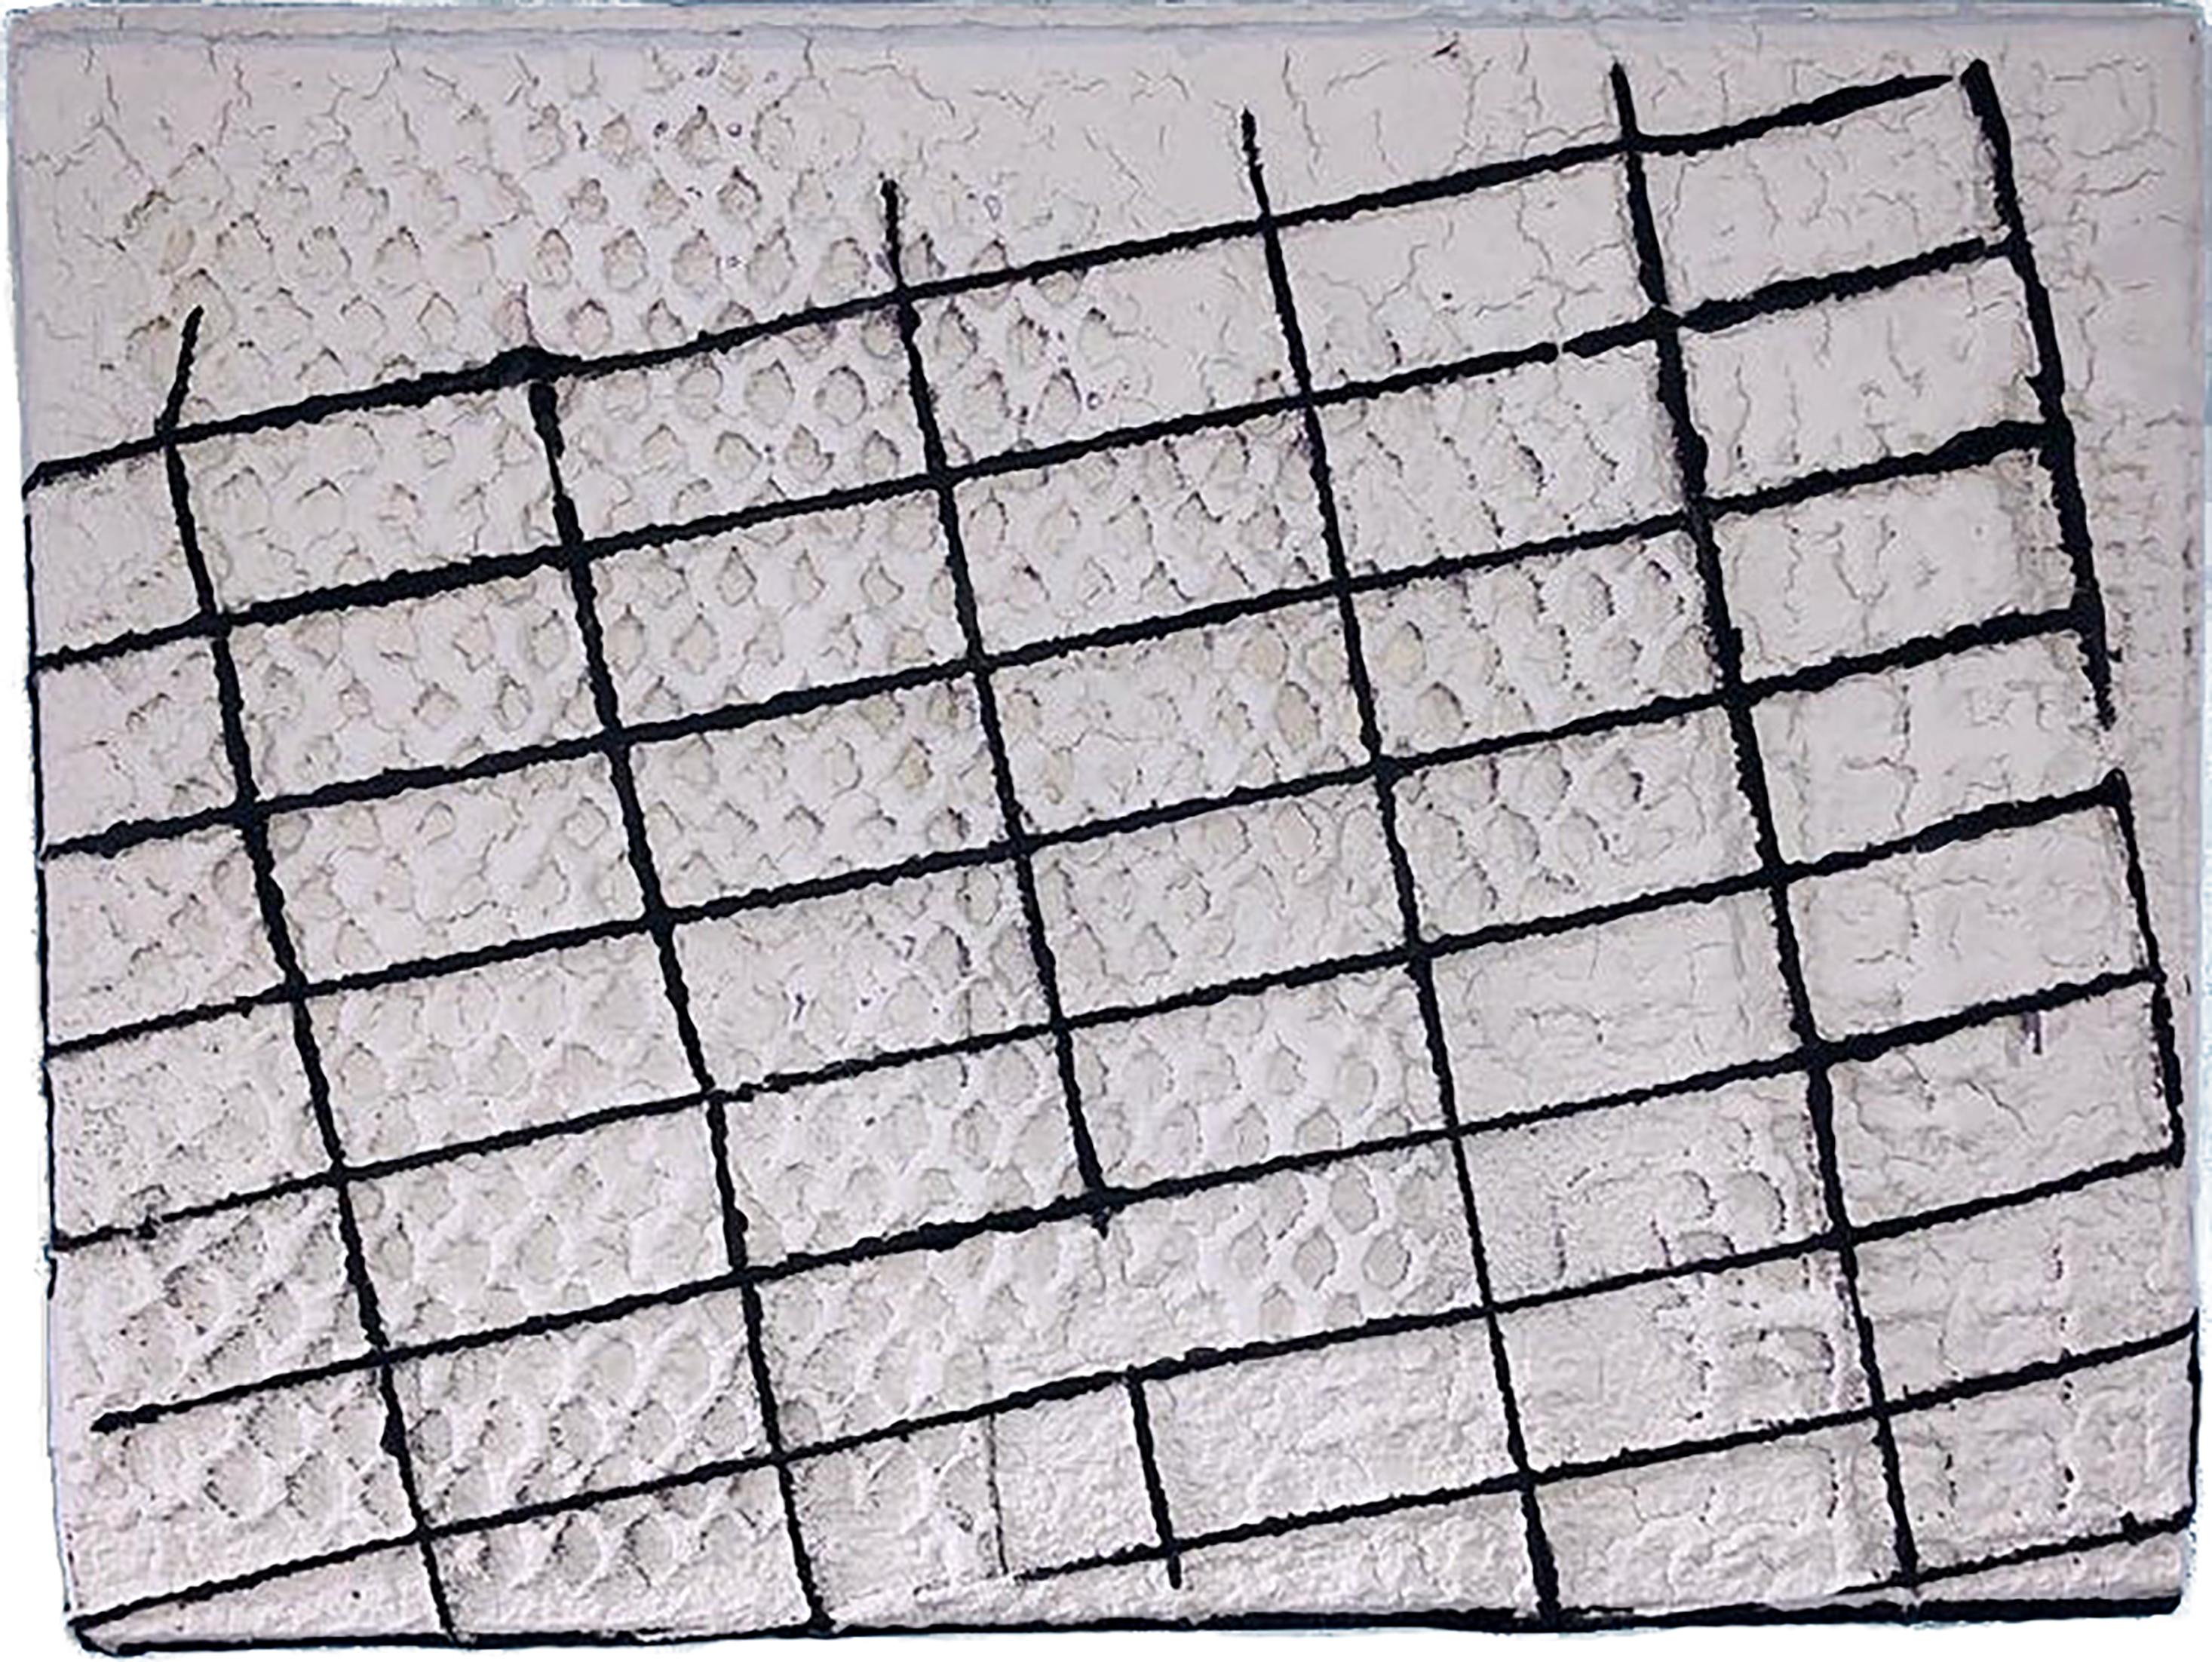 Weiße, rechteckige Leinwand mit schwarzem, linearem, gitterartigem Muster überlagert.  Die strukturierte, mehrschichtige Farbe legt eine Gitterform darunter frei.  Einzigartige Leinwand, fertig zum Aufhängen.  Verso signiert.

KÜNSTLERBIO 
Der in